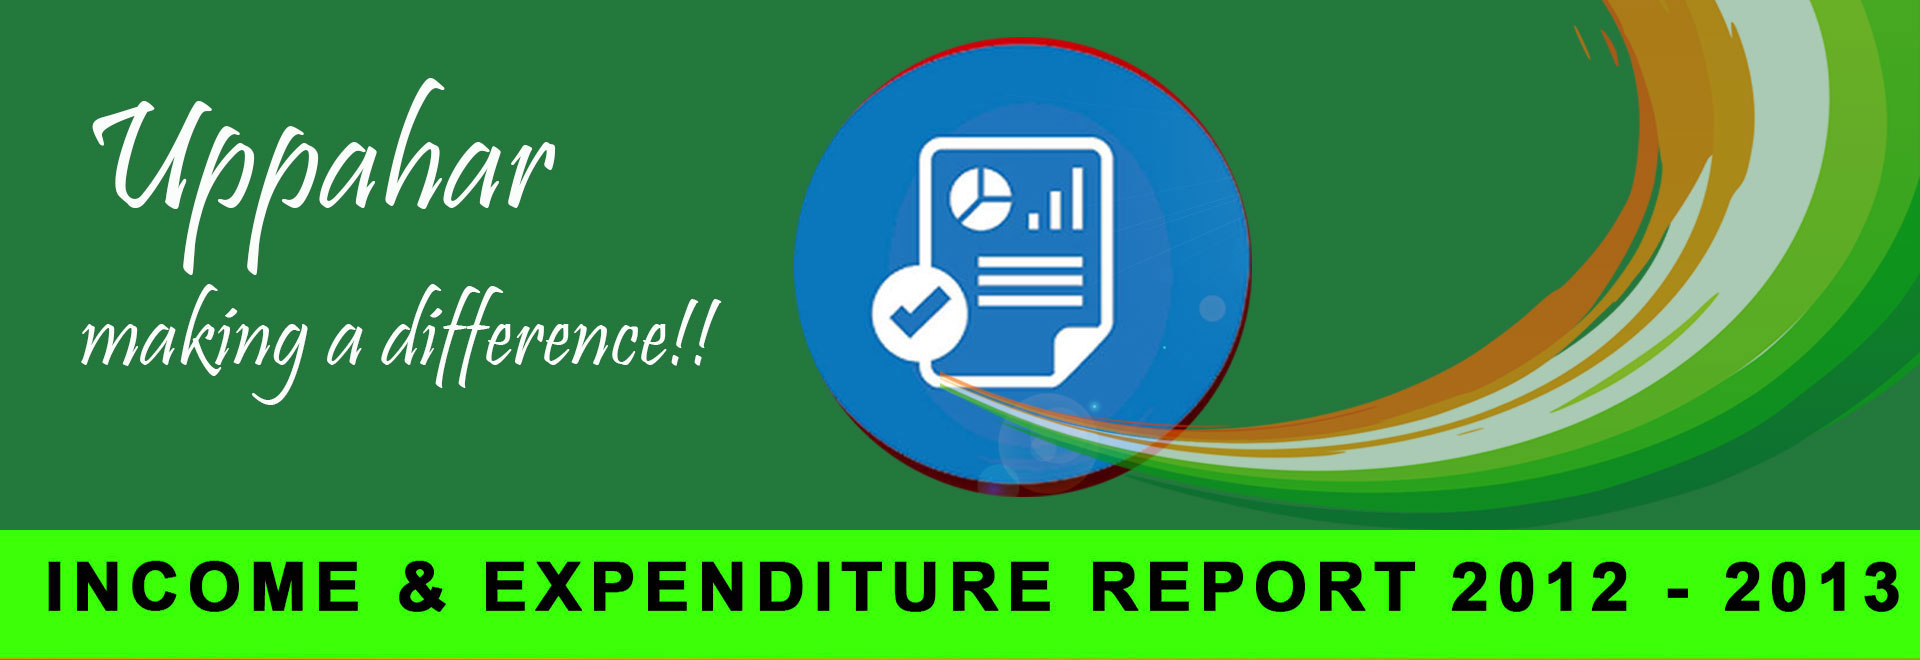 Audit Report 2012 - 2013